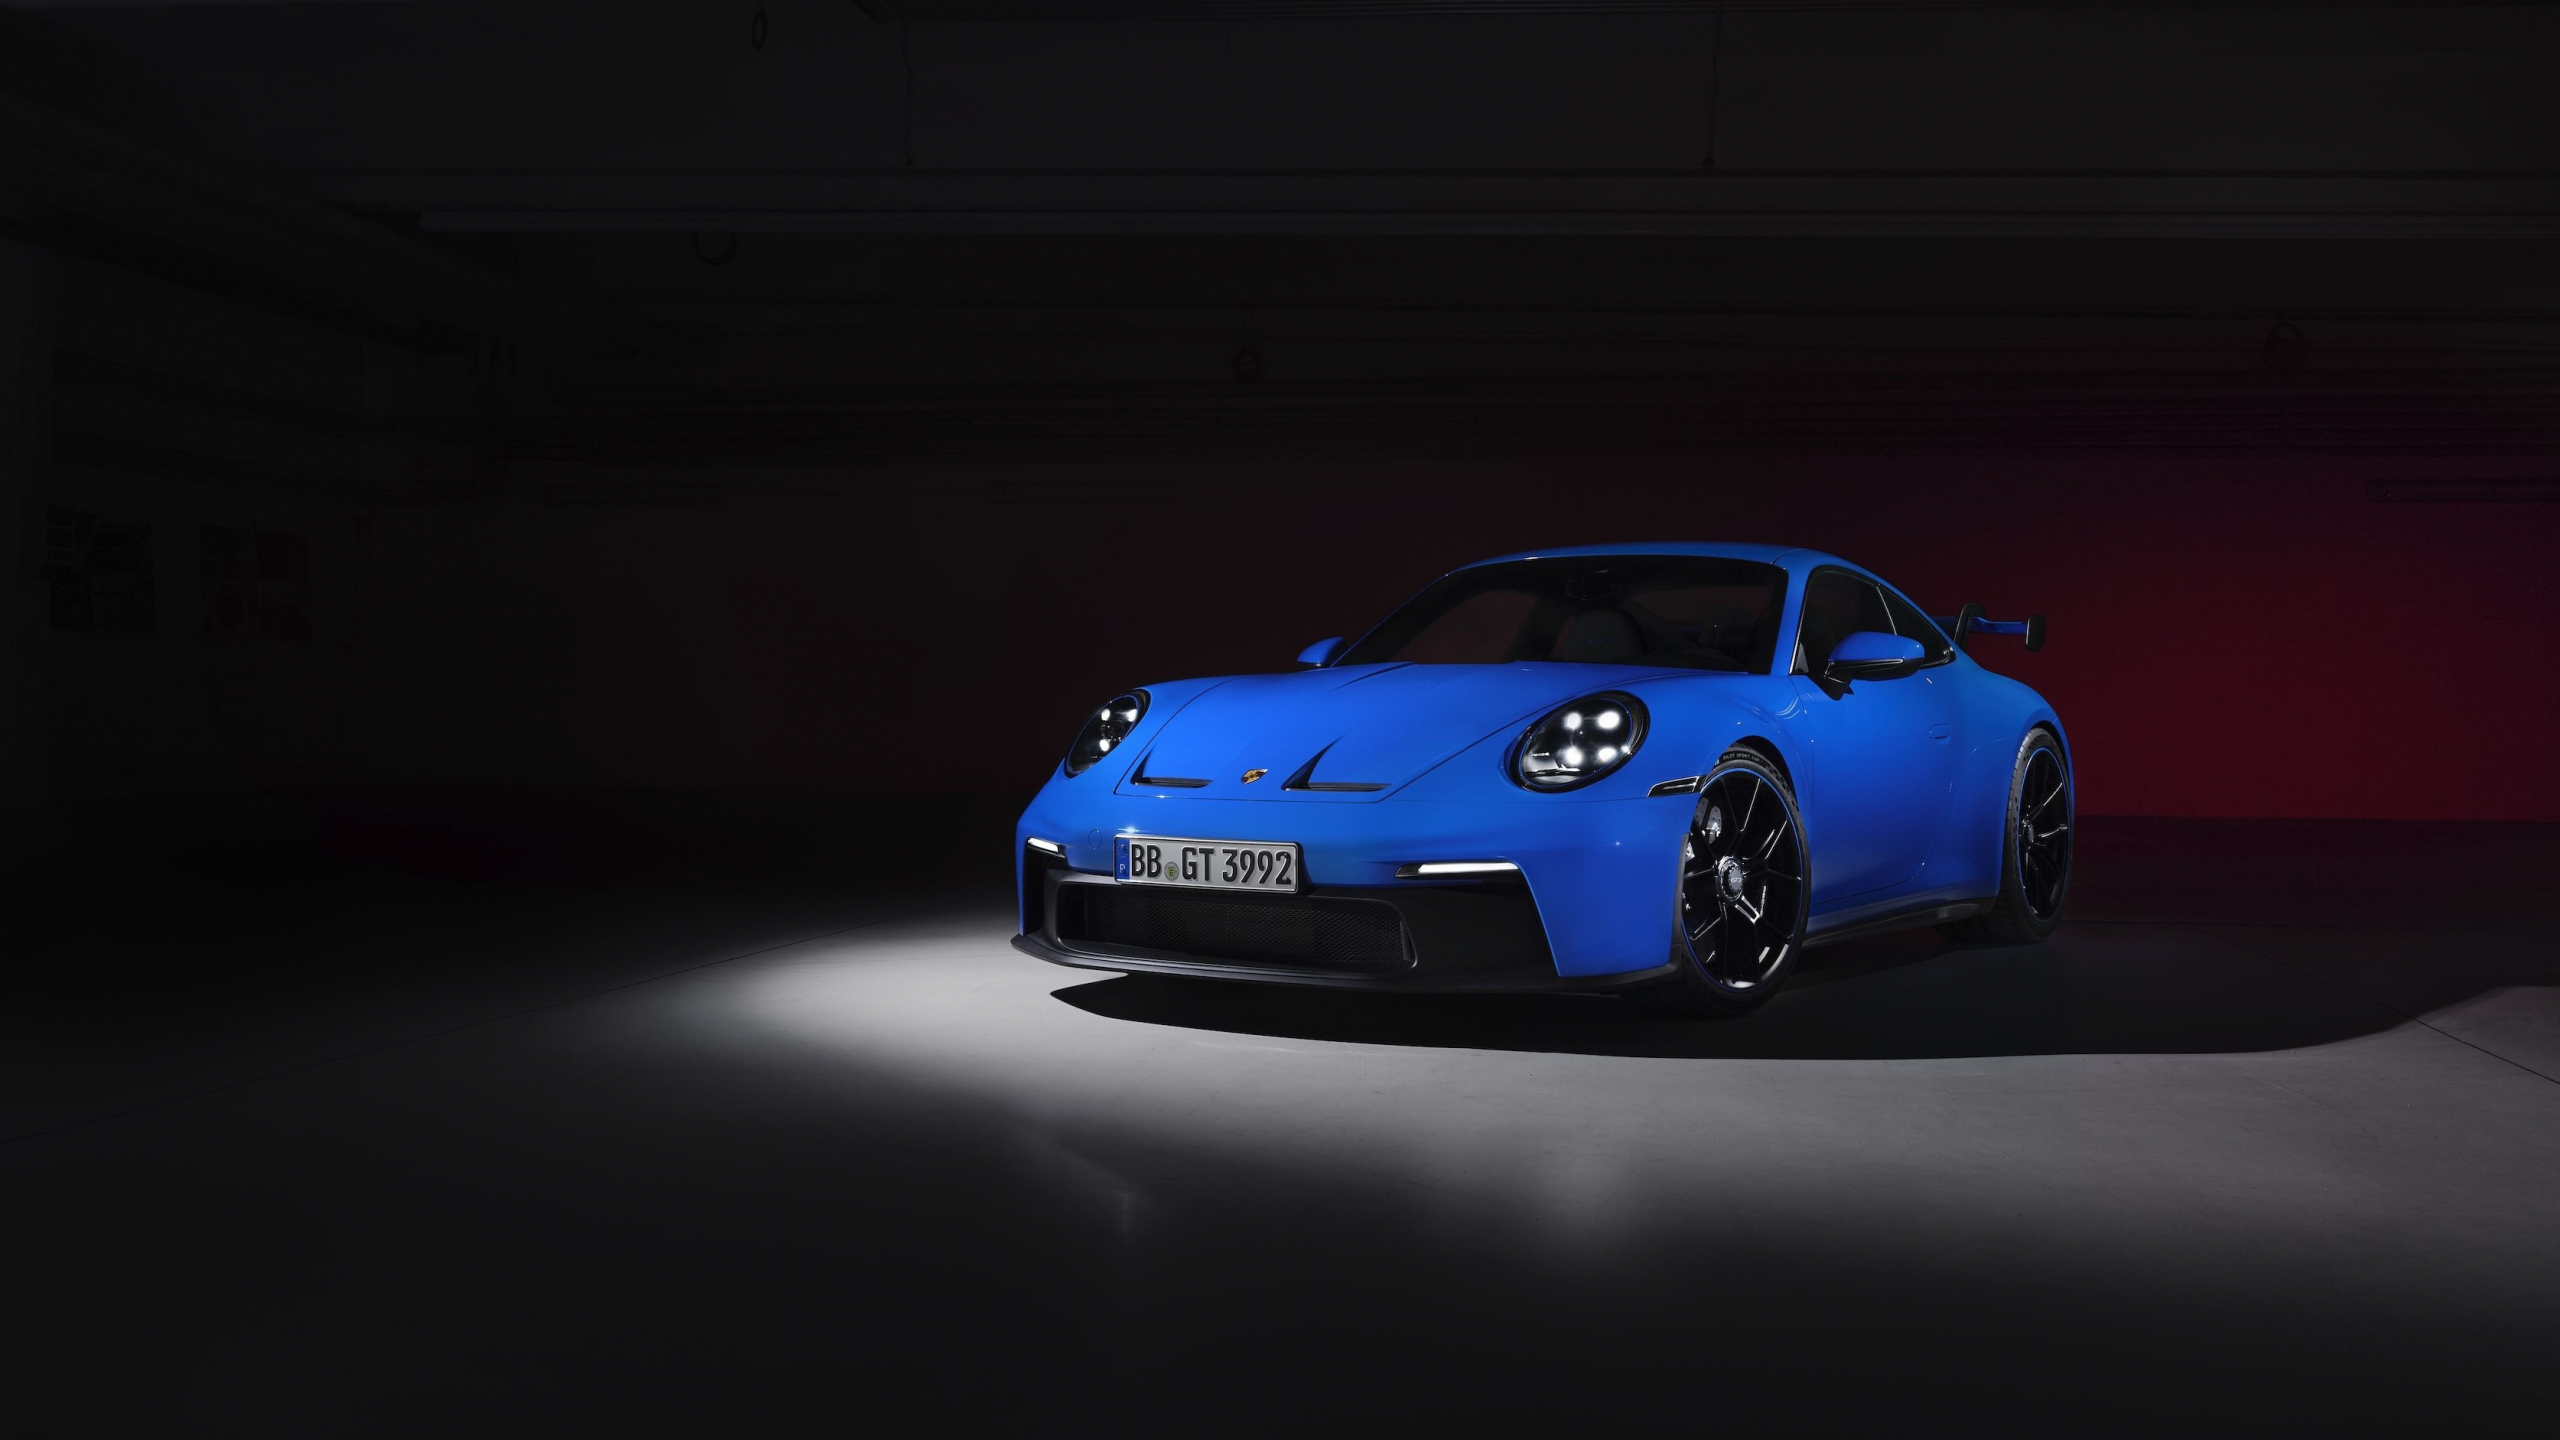 Download 2560x1440 Wallpaper Porsche 911 Gt3 2021 Blue Car Dual Wide Widescreen 16 9 Widescreen 2560x1440 Hd Image Background 26957